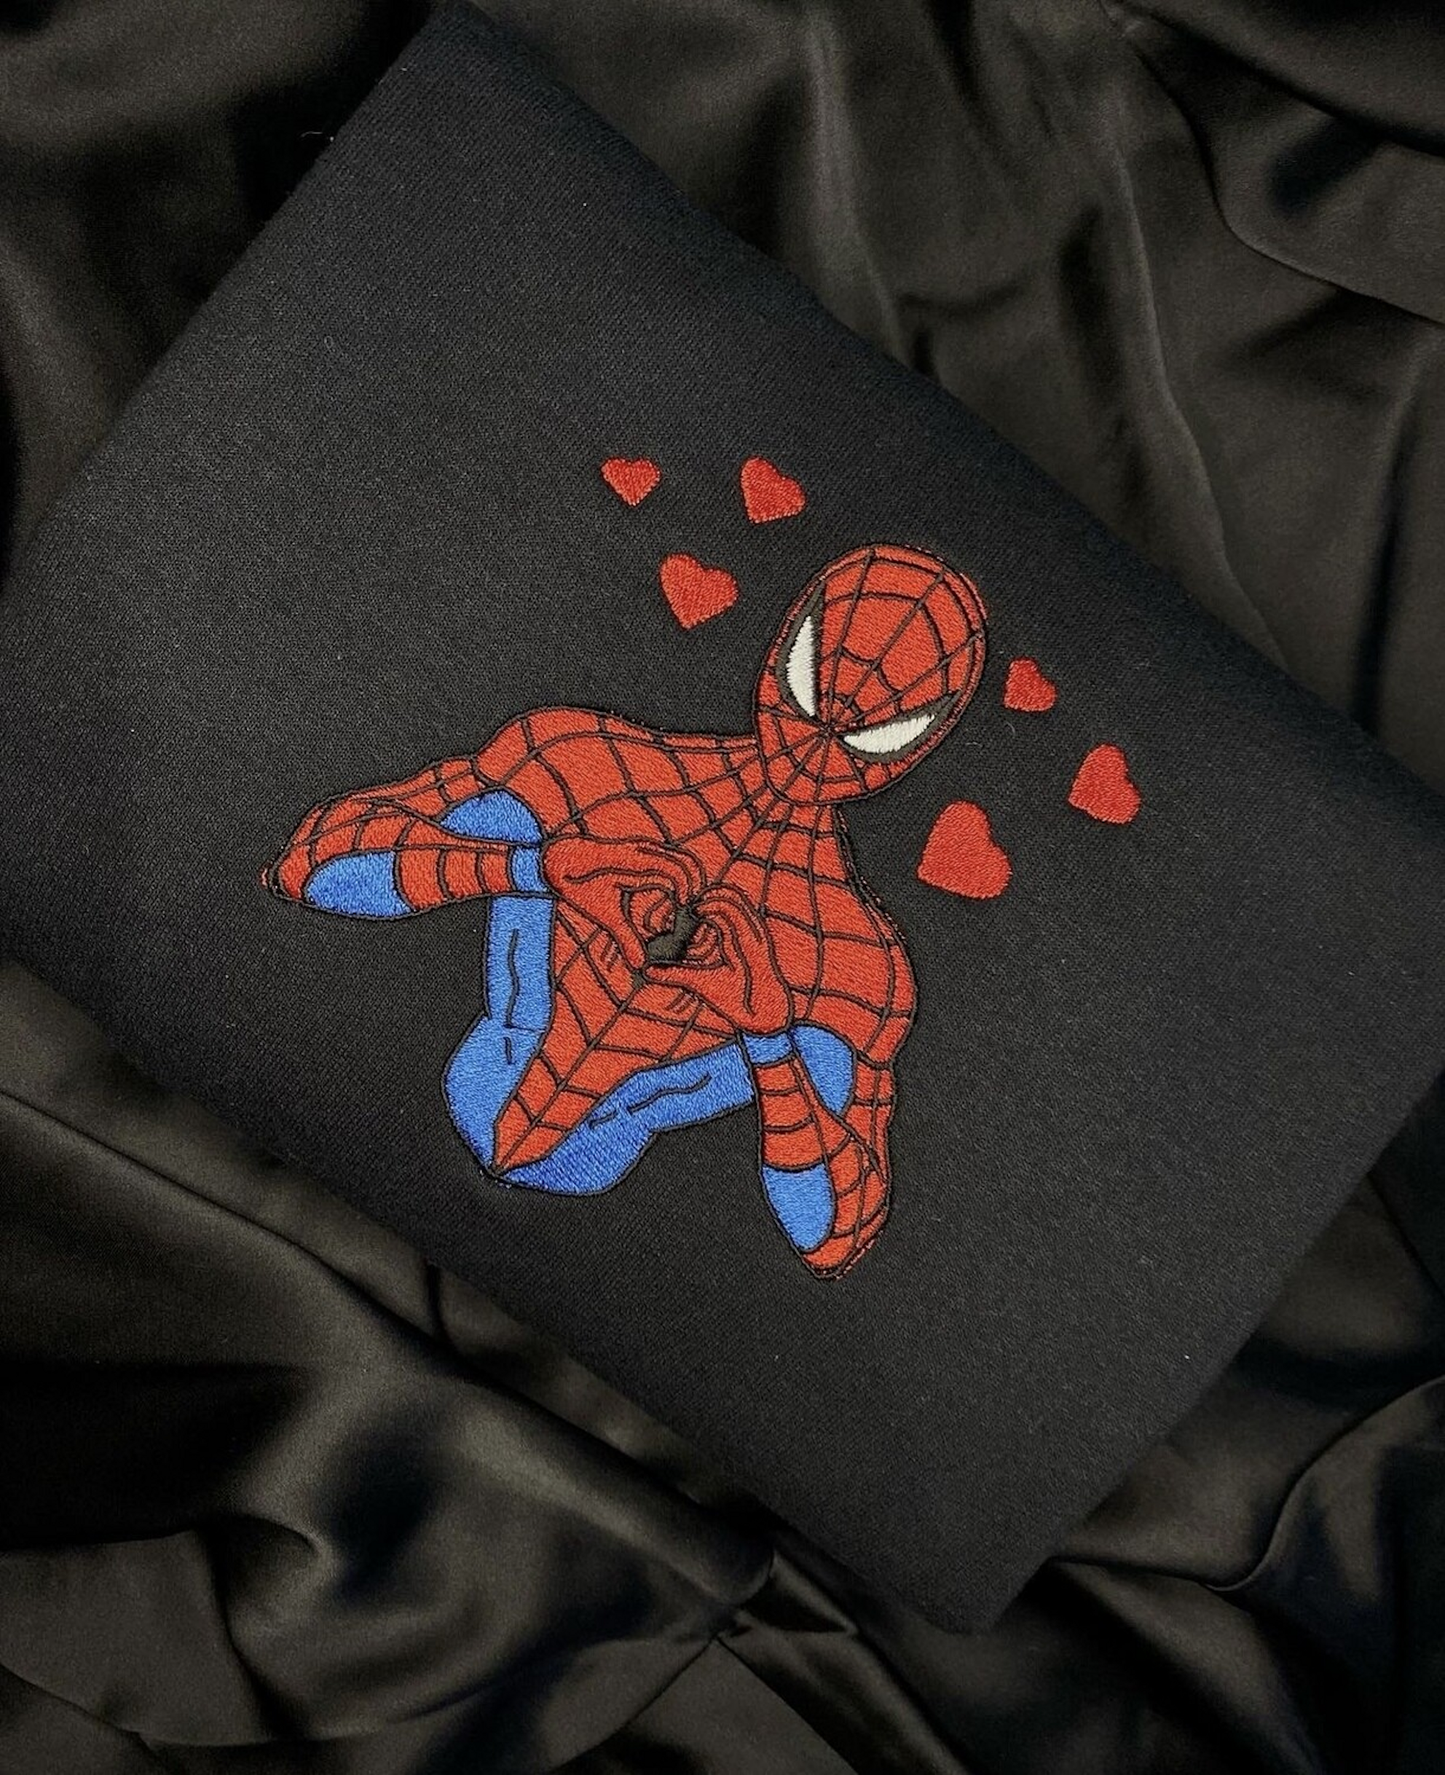 Spiderman Love Shows Love - embroidered unisex crewneck sweatshirt